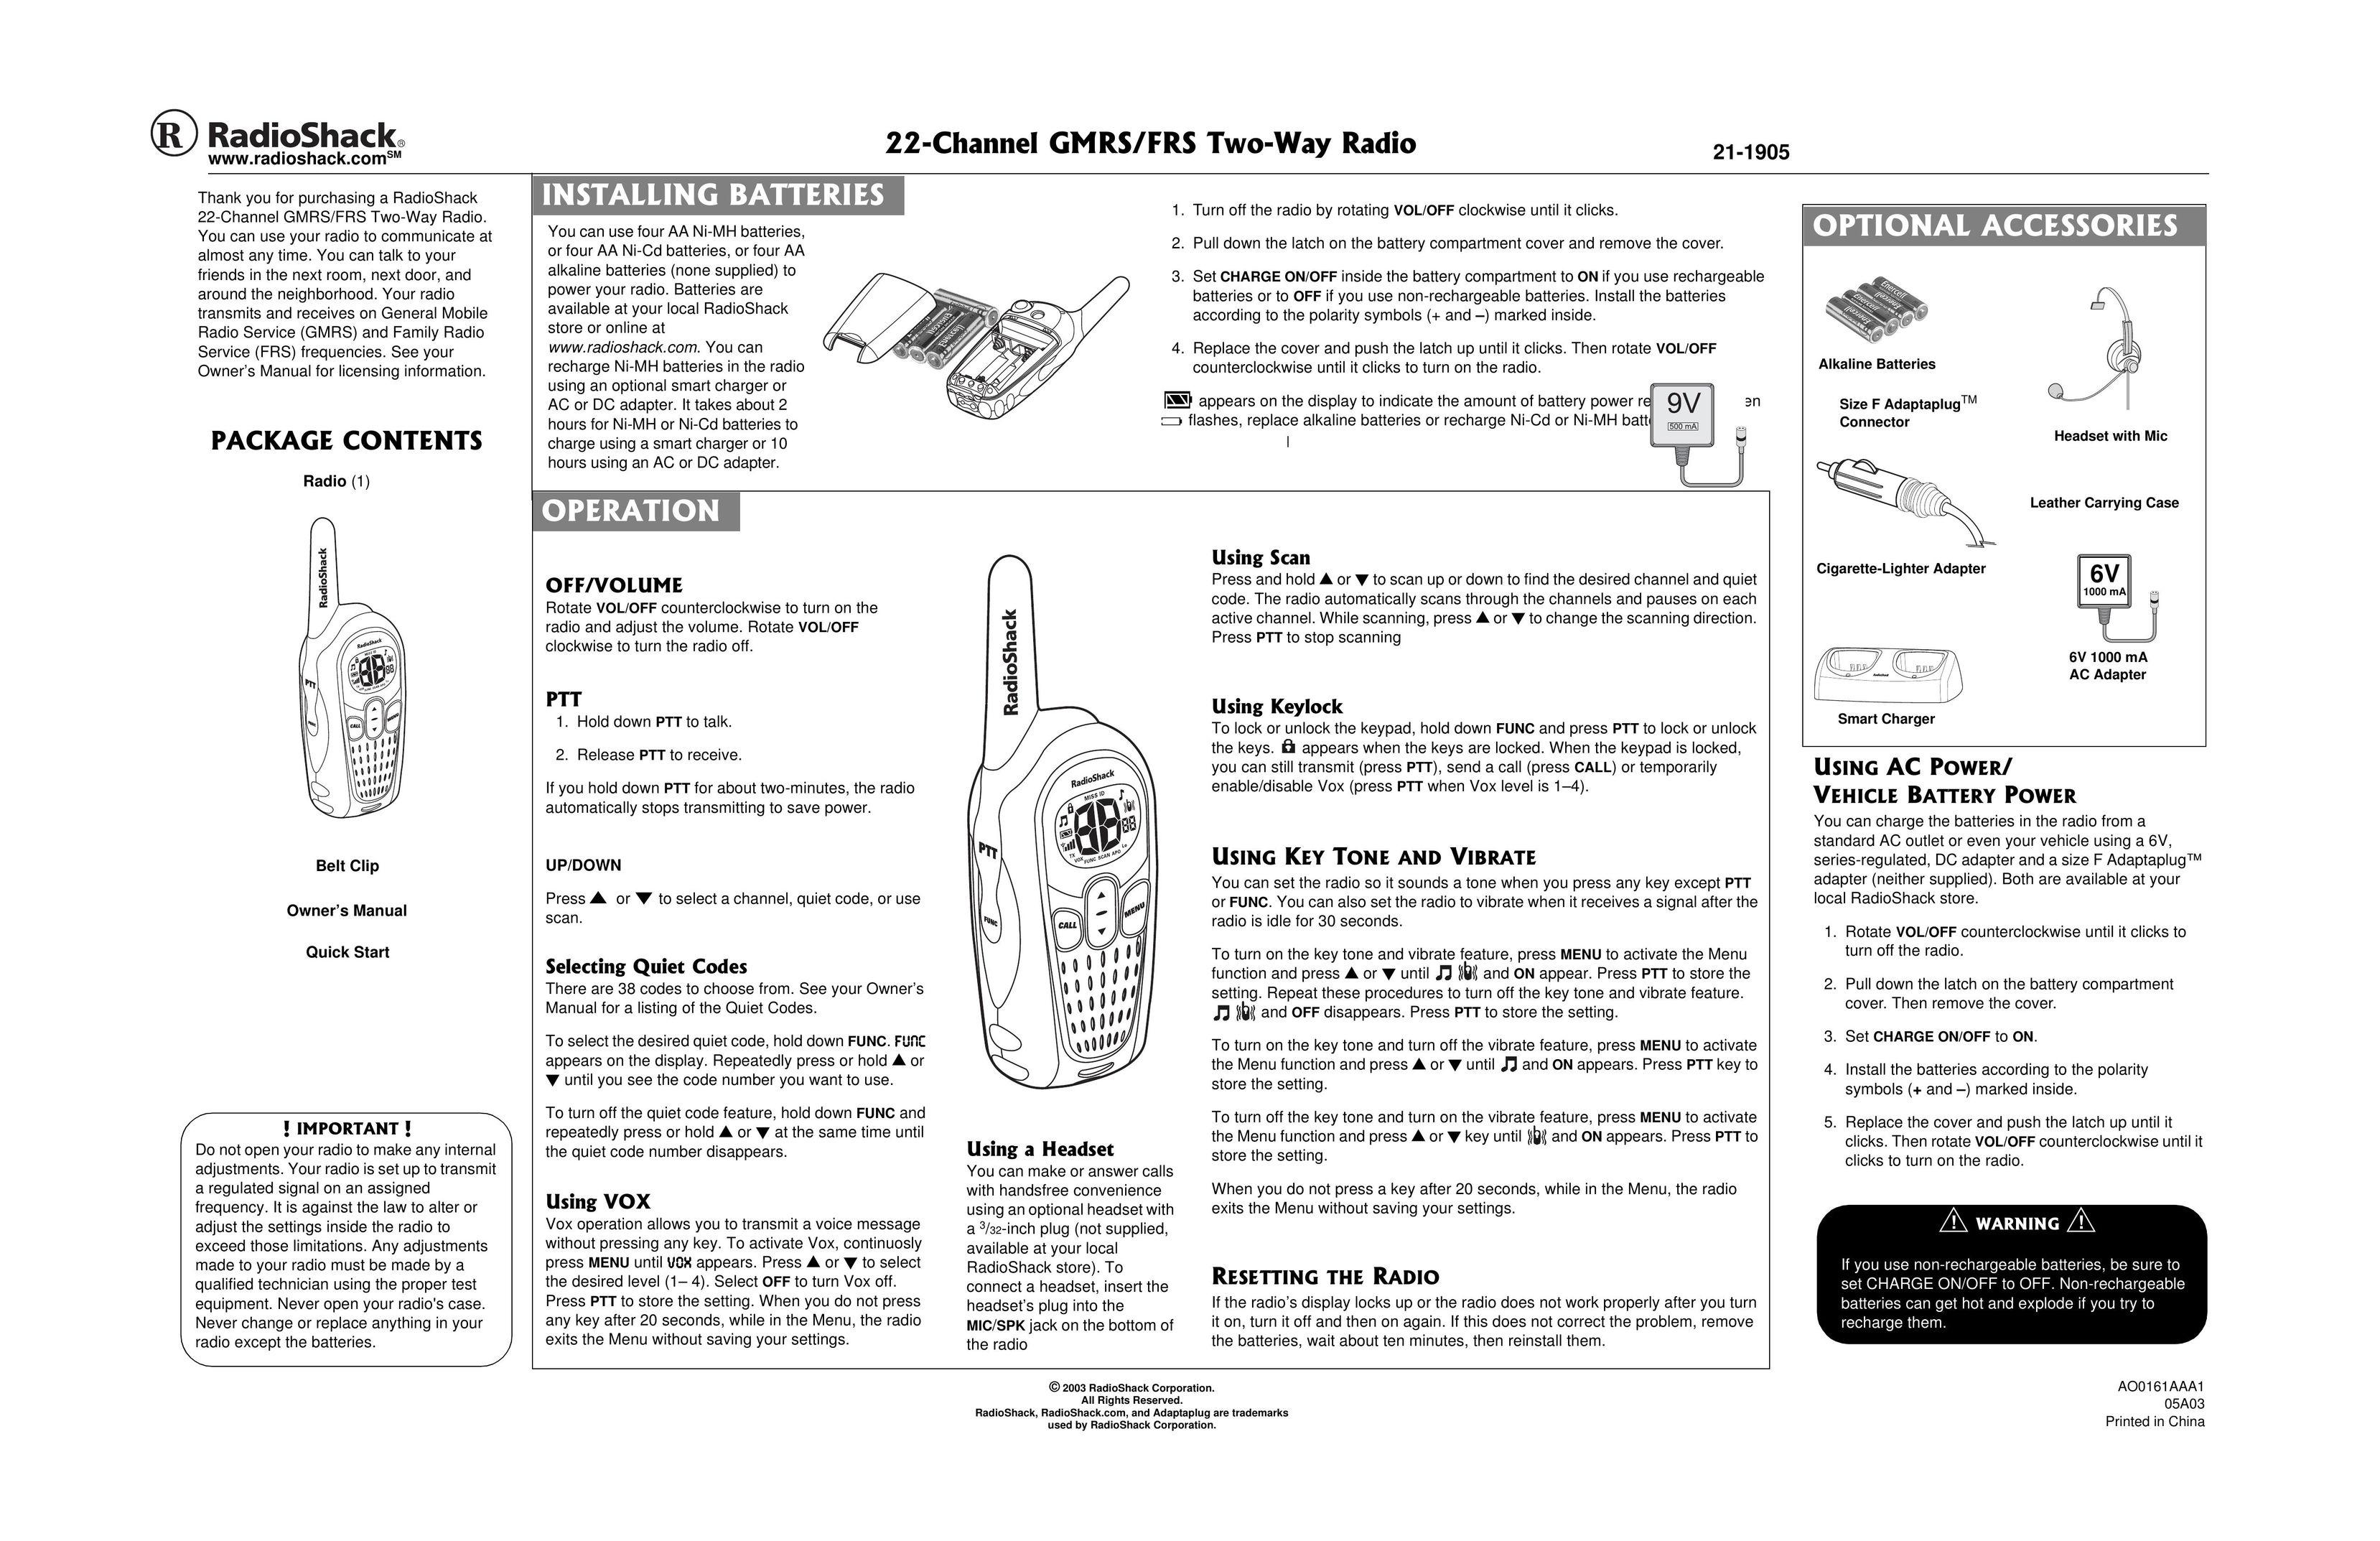 Radio Shack AO0161AAA1 Two-Way Radio User Manual